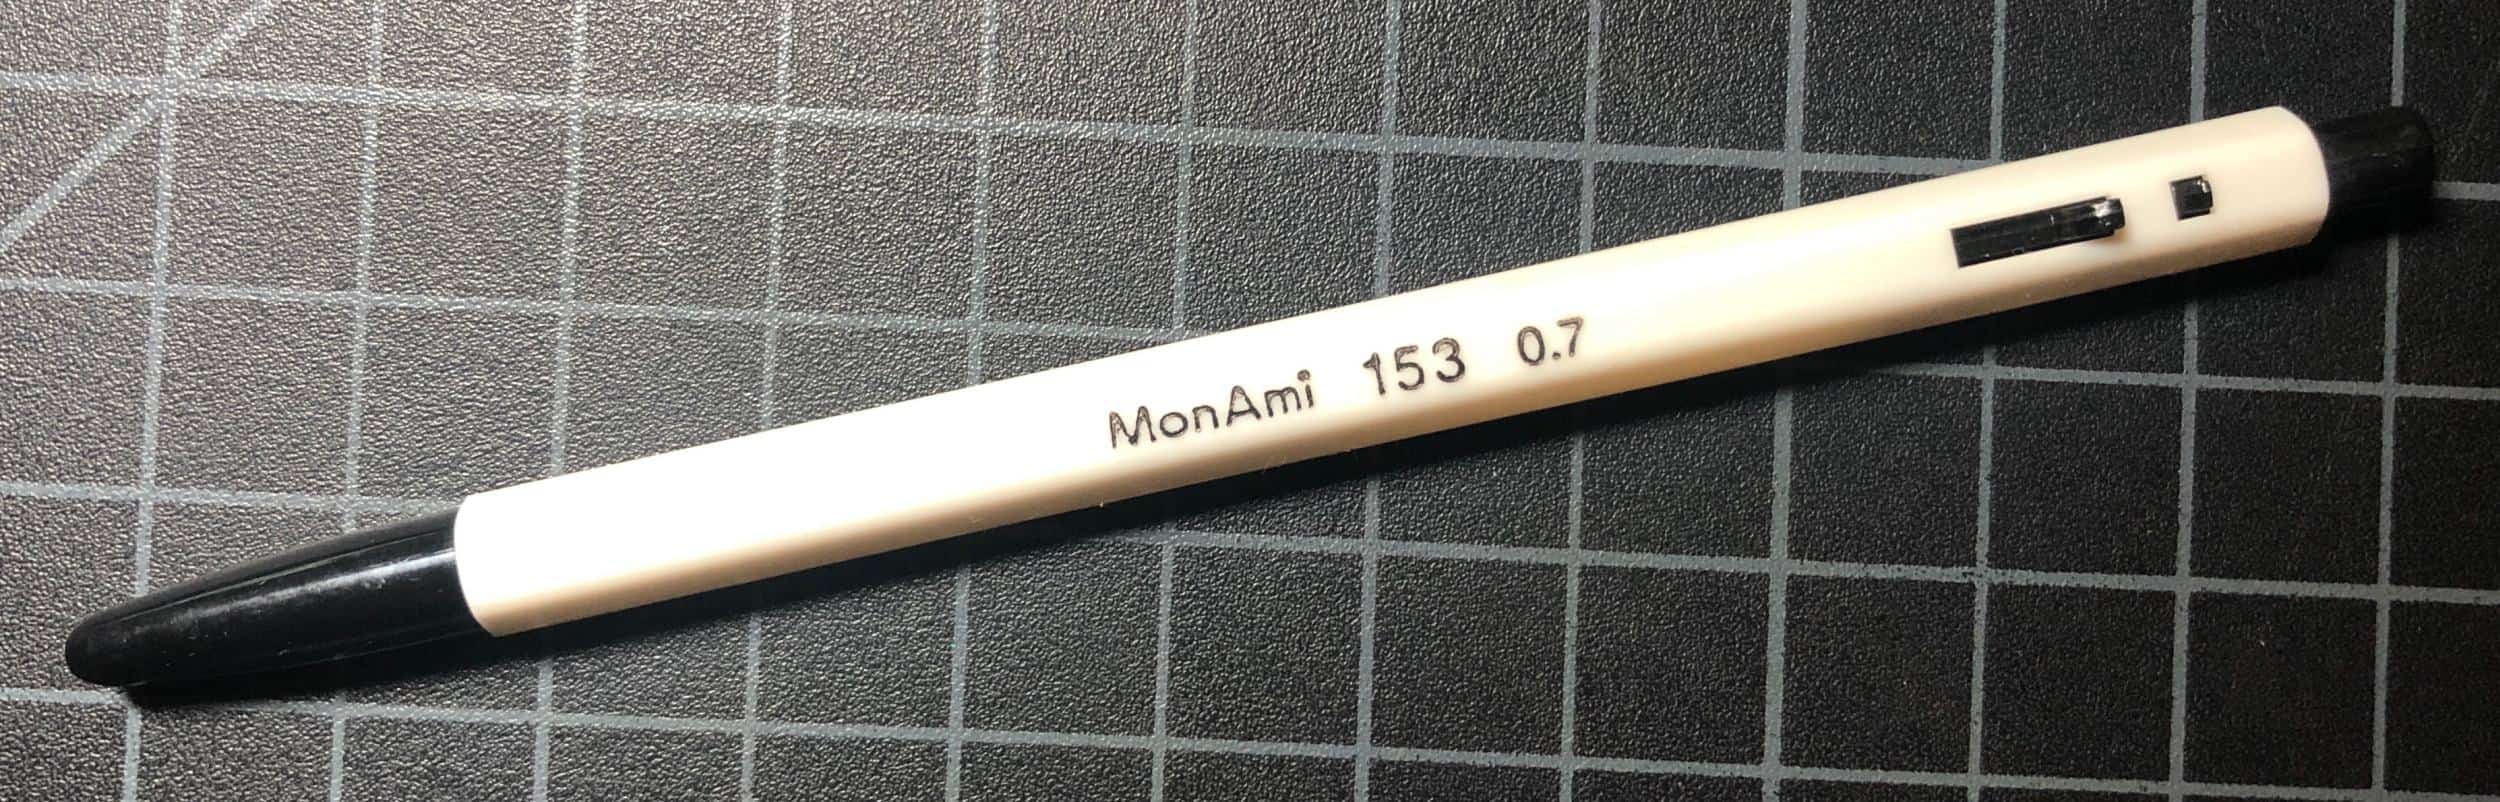 MonAmi 153